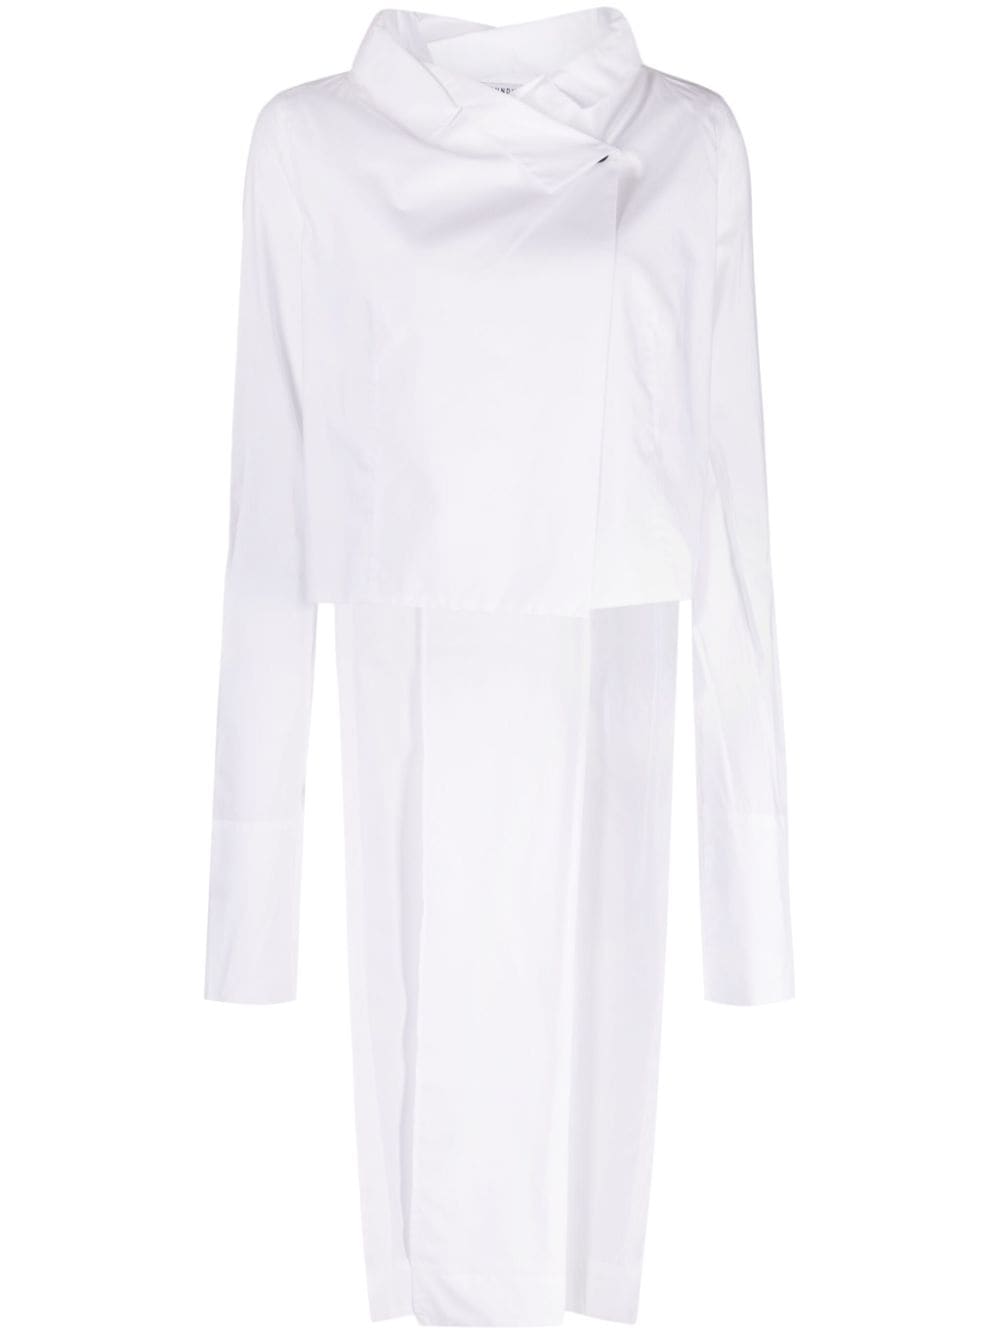 Rundholz cape-design cotton shirt - White von Rundholz